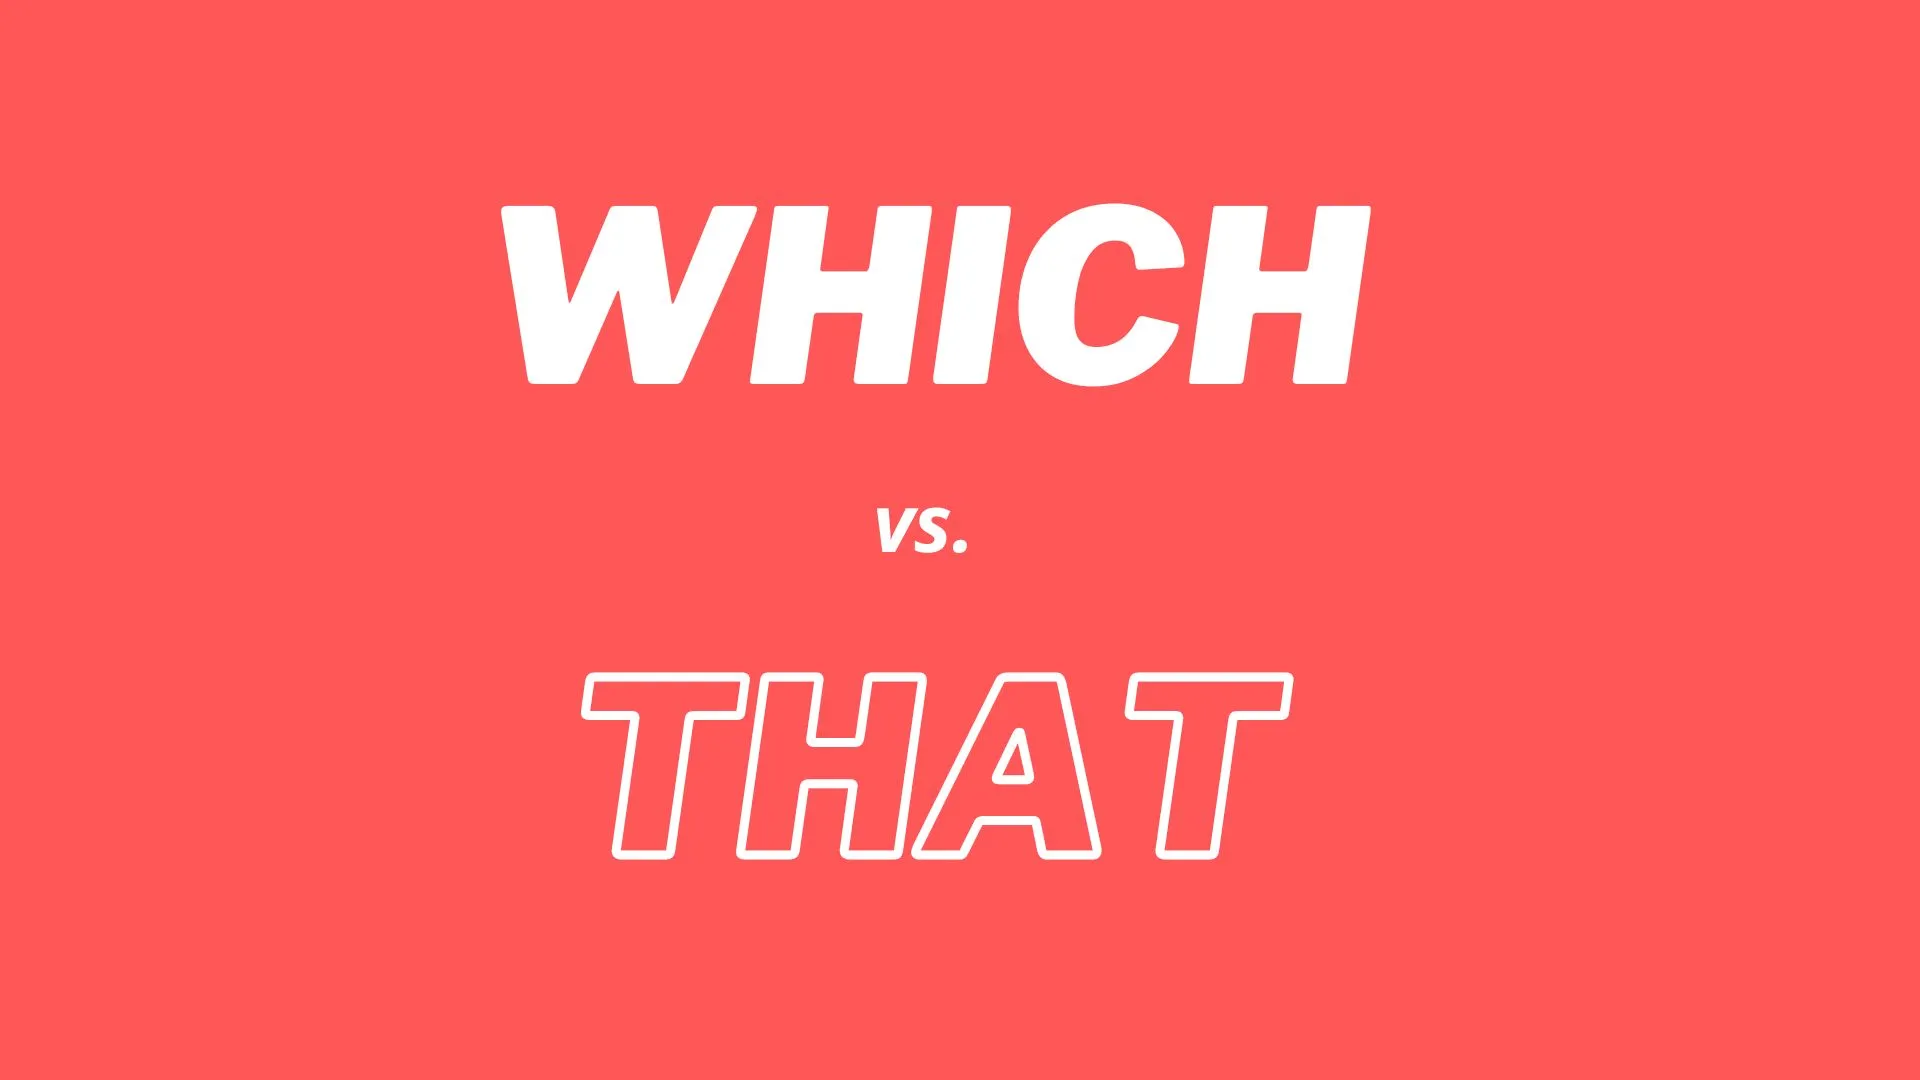 英語文法における "which" と "that" の違いについての簡単な説明。